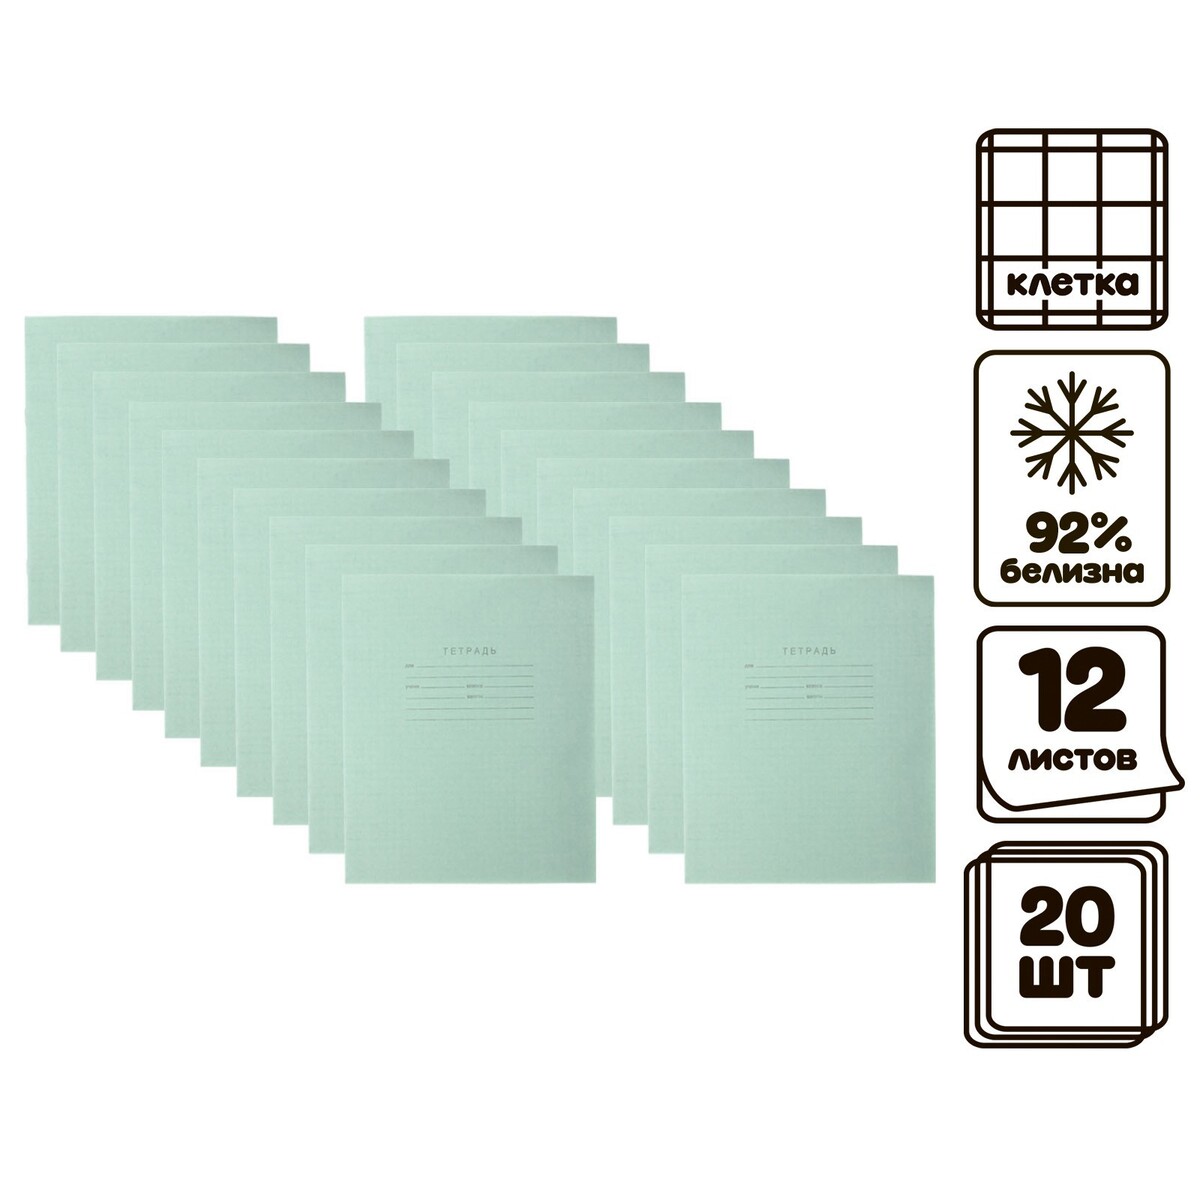 Комплект тетрадей из 20 штук, 12 листов в клетку кпк комплект тетрадей из 20 штук 12 листов в клетку зеленая обложка блок офсет 1 белизна 92%